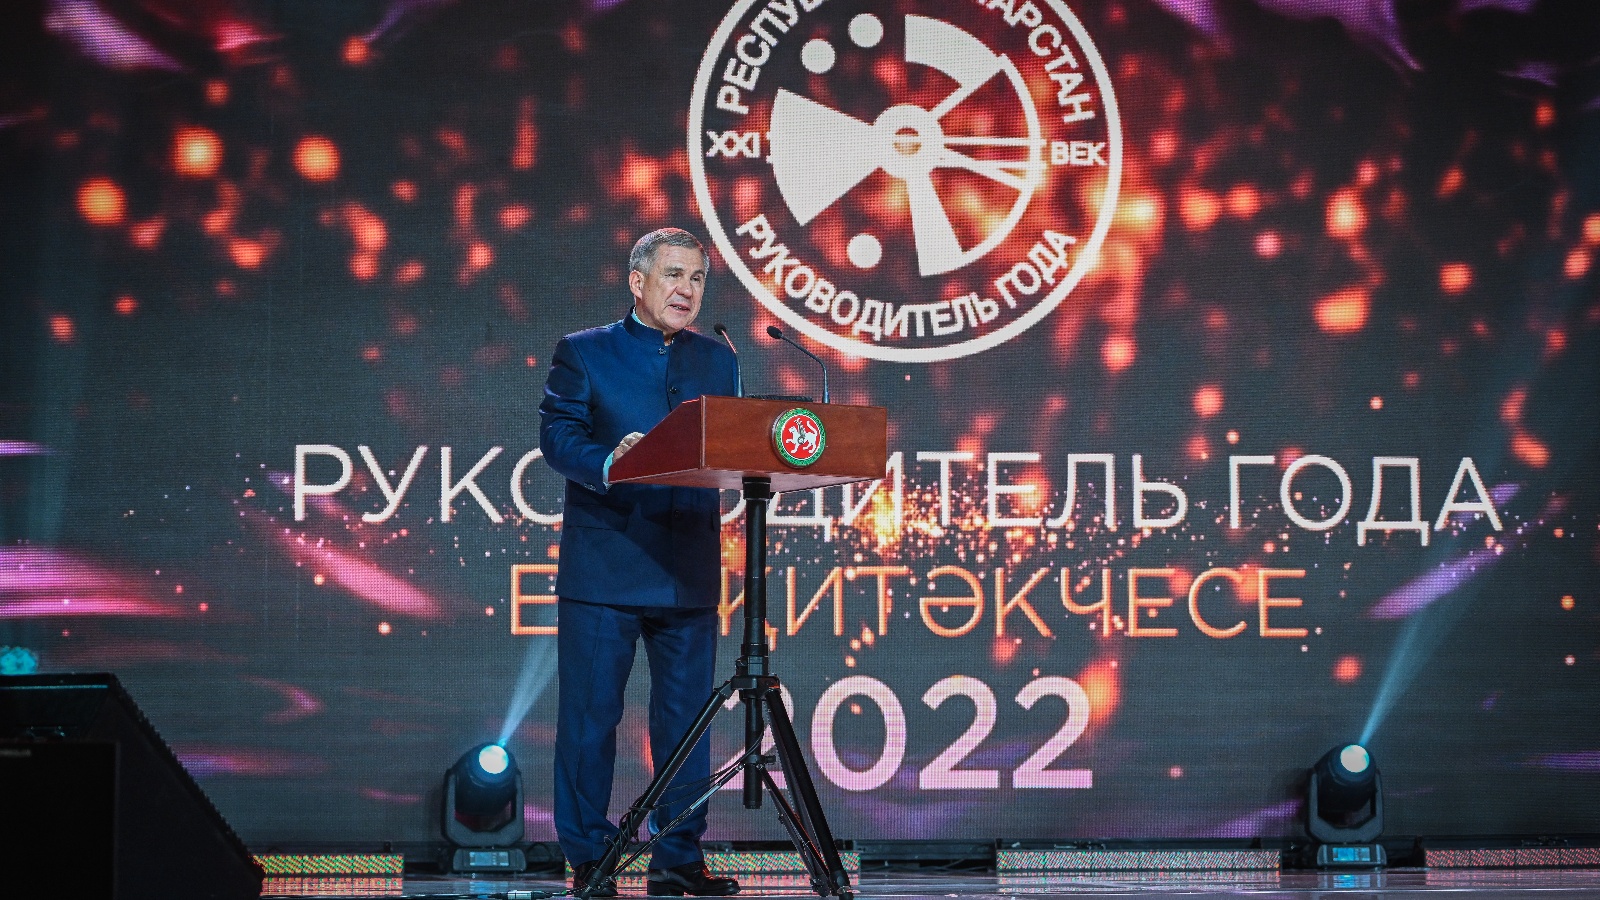 Рустам Минниханов и Минтимер Шаймиев поздравили лауреатов конкурса «Руководитель года-2022»